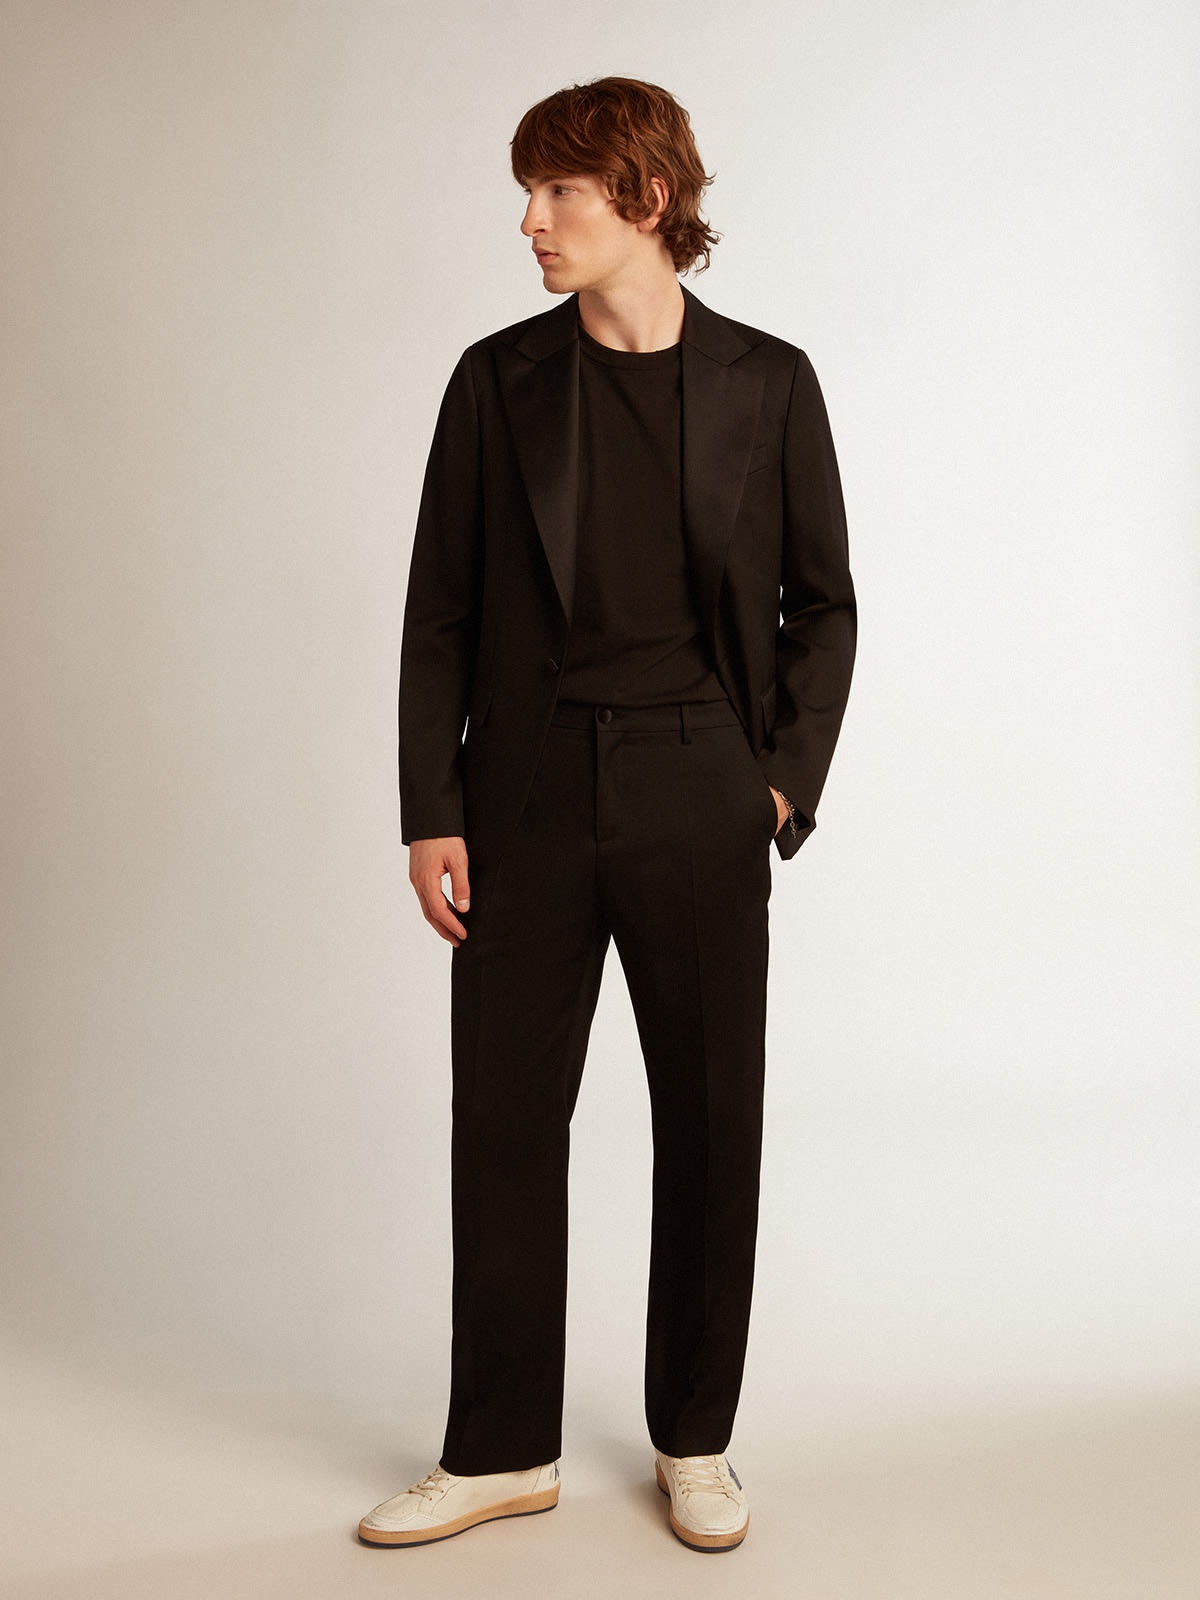 Men’s tuxedo pants in black wool gabardine - 3